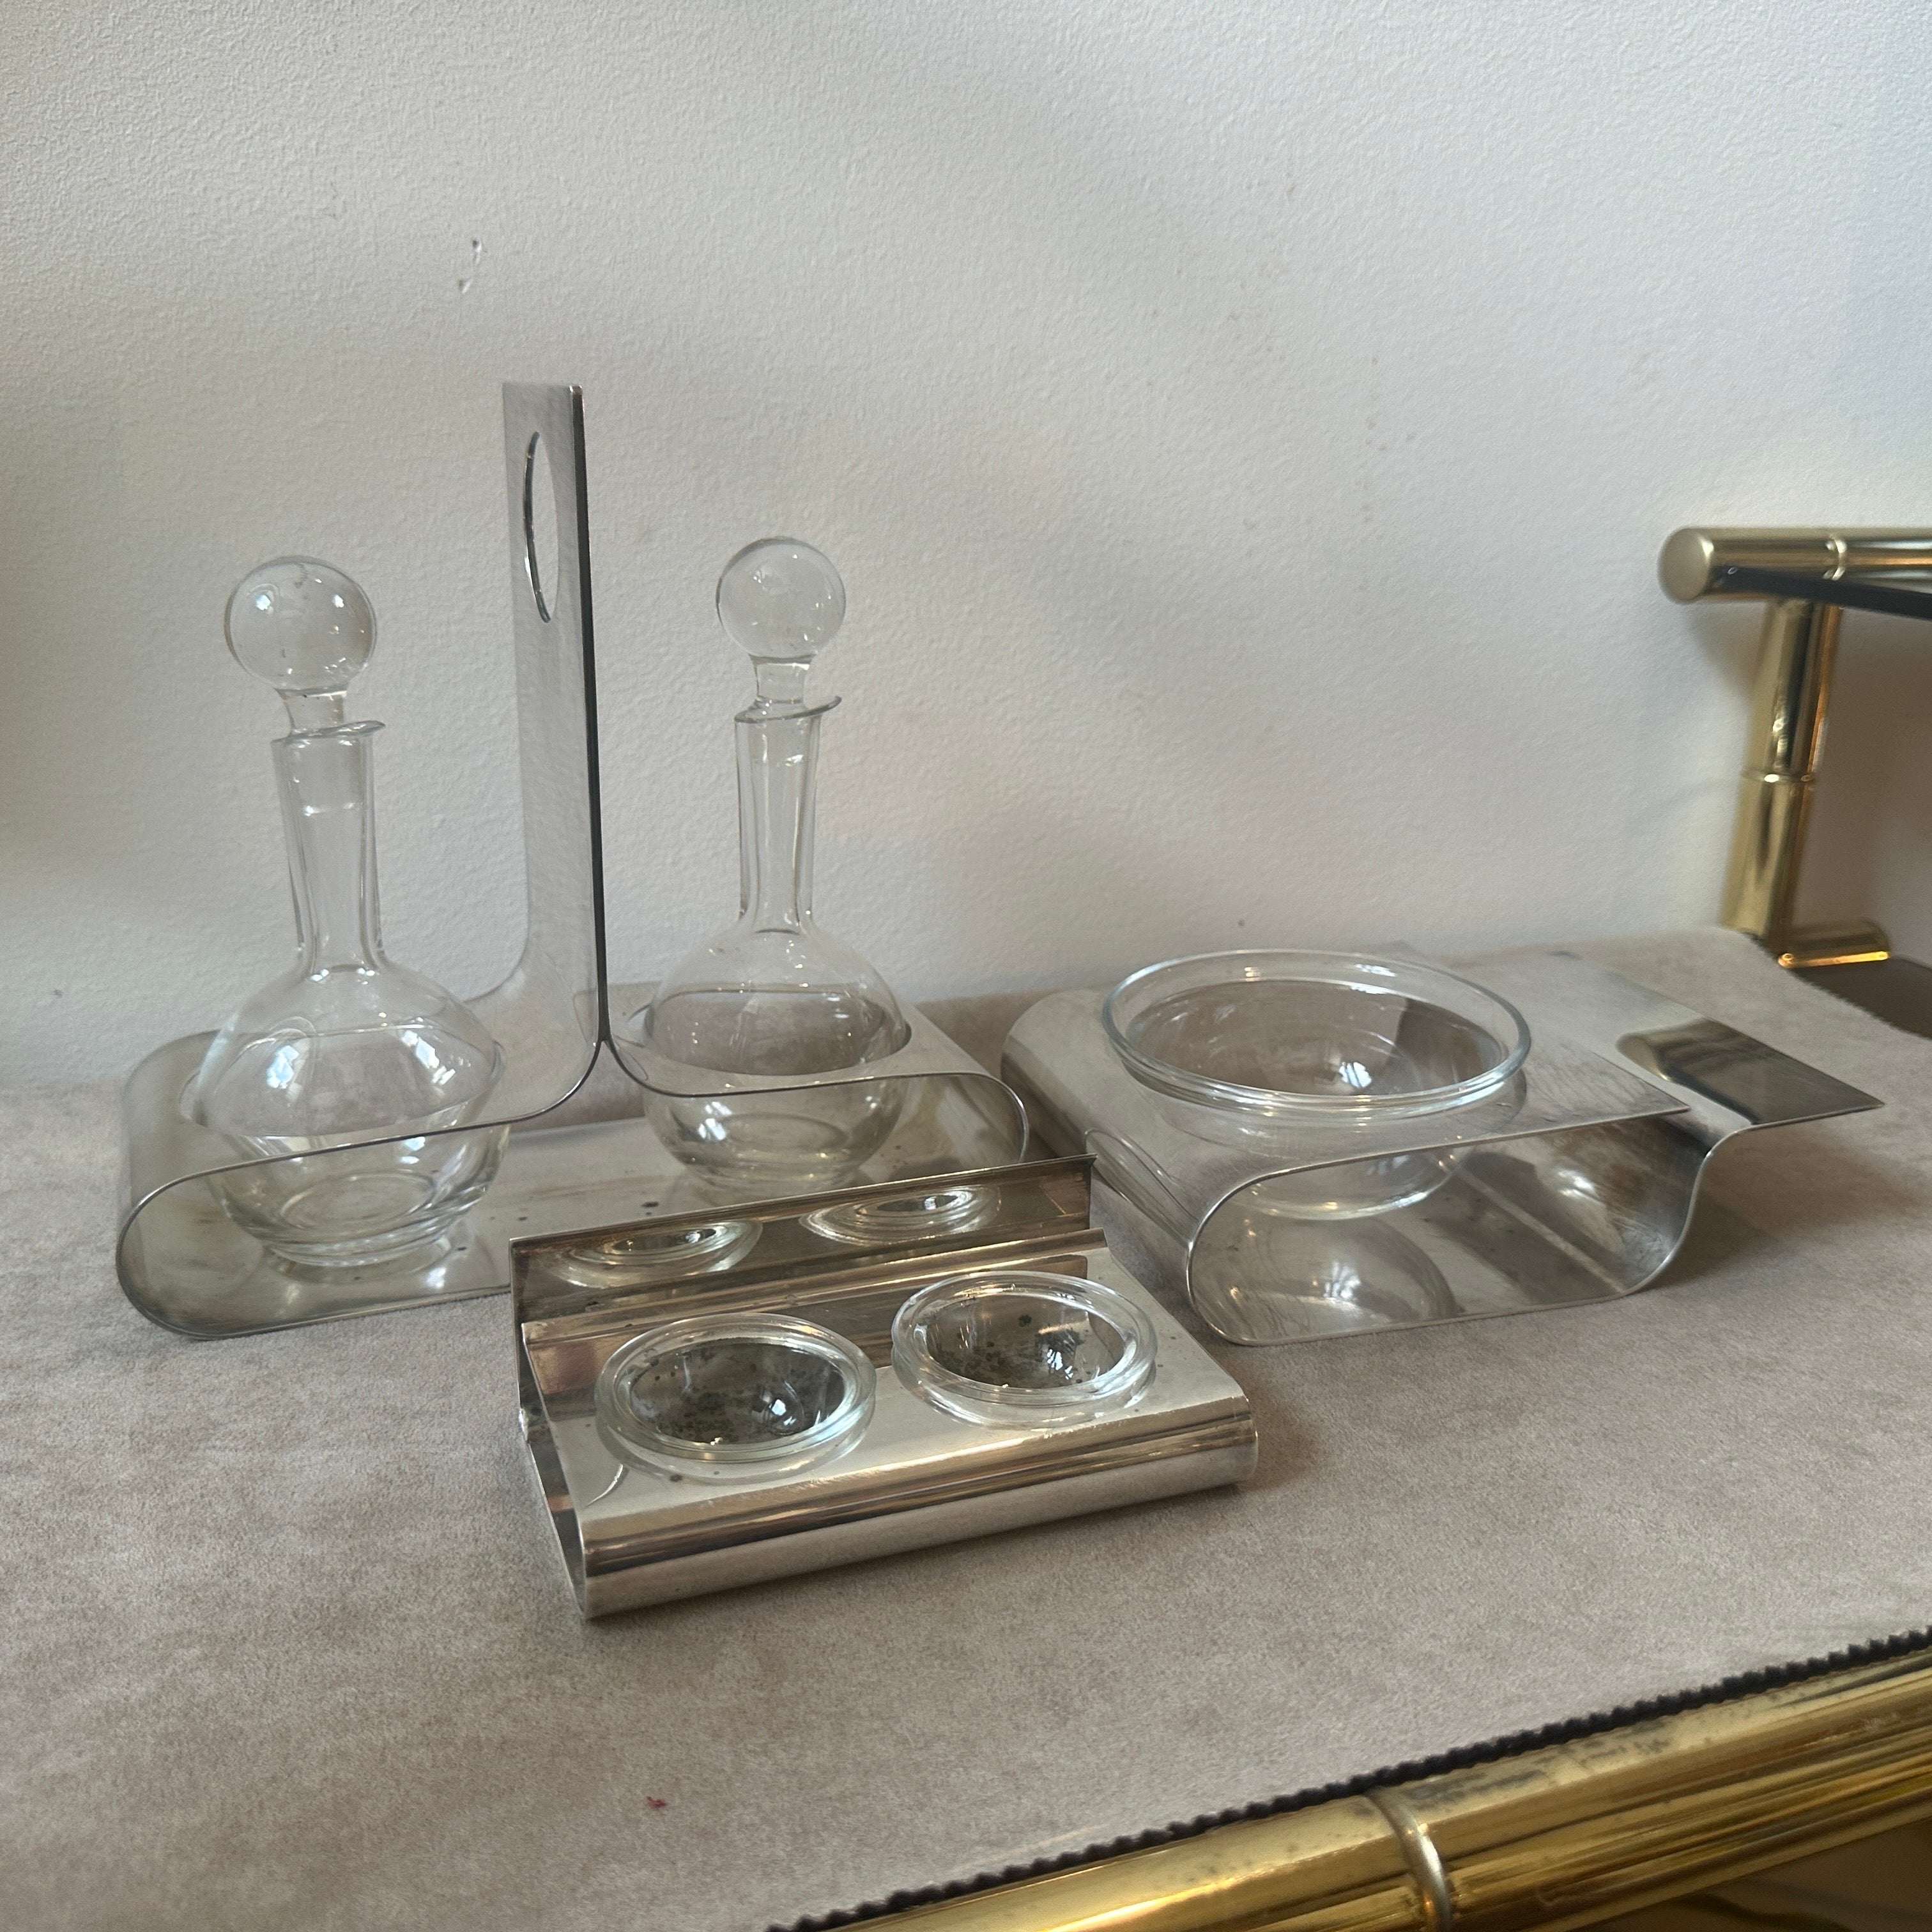 
Dieses von Lino Sabattini entworfene versilberte Set besteht aus einem Öl- und Essigbehälter mit Kristallglasampullen, einer Käseschale und einem Salz- und Pfefferstreuer. Die beiden anderen Stücke haben die Maße 17x12 cm bzw. 12x8 cm. Sie sind